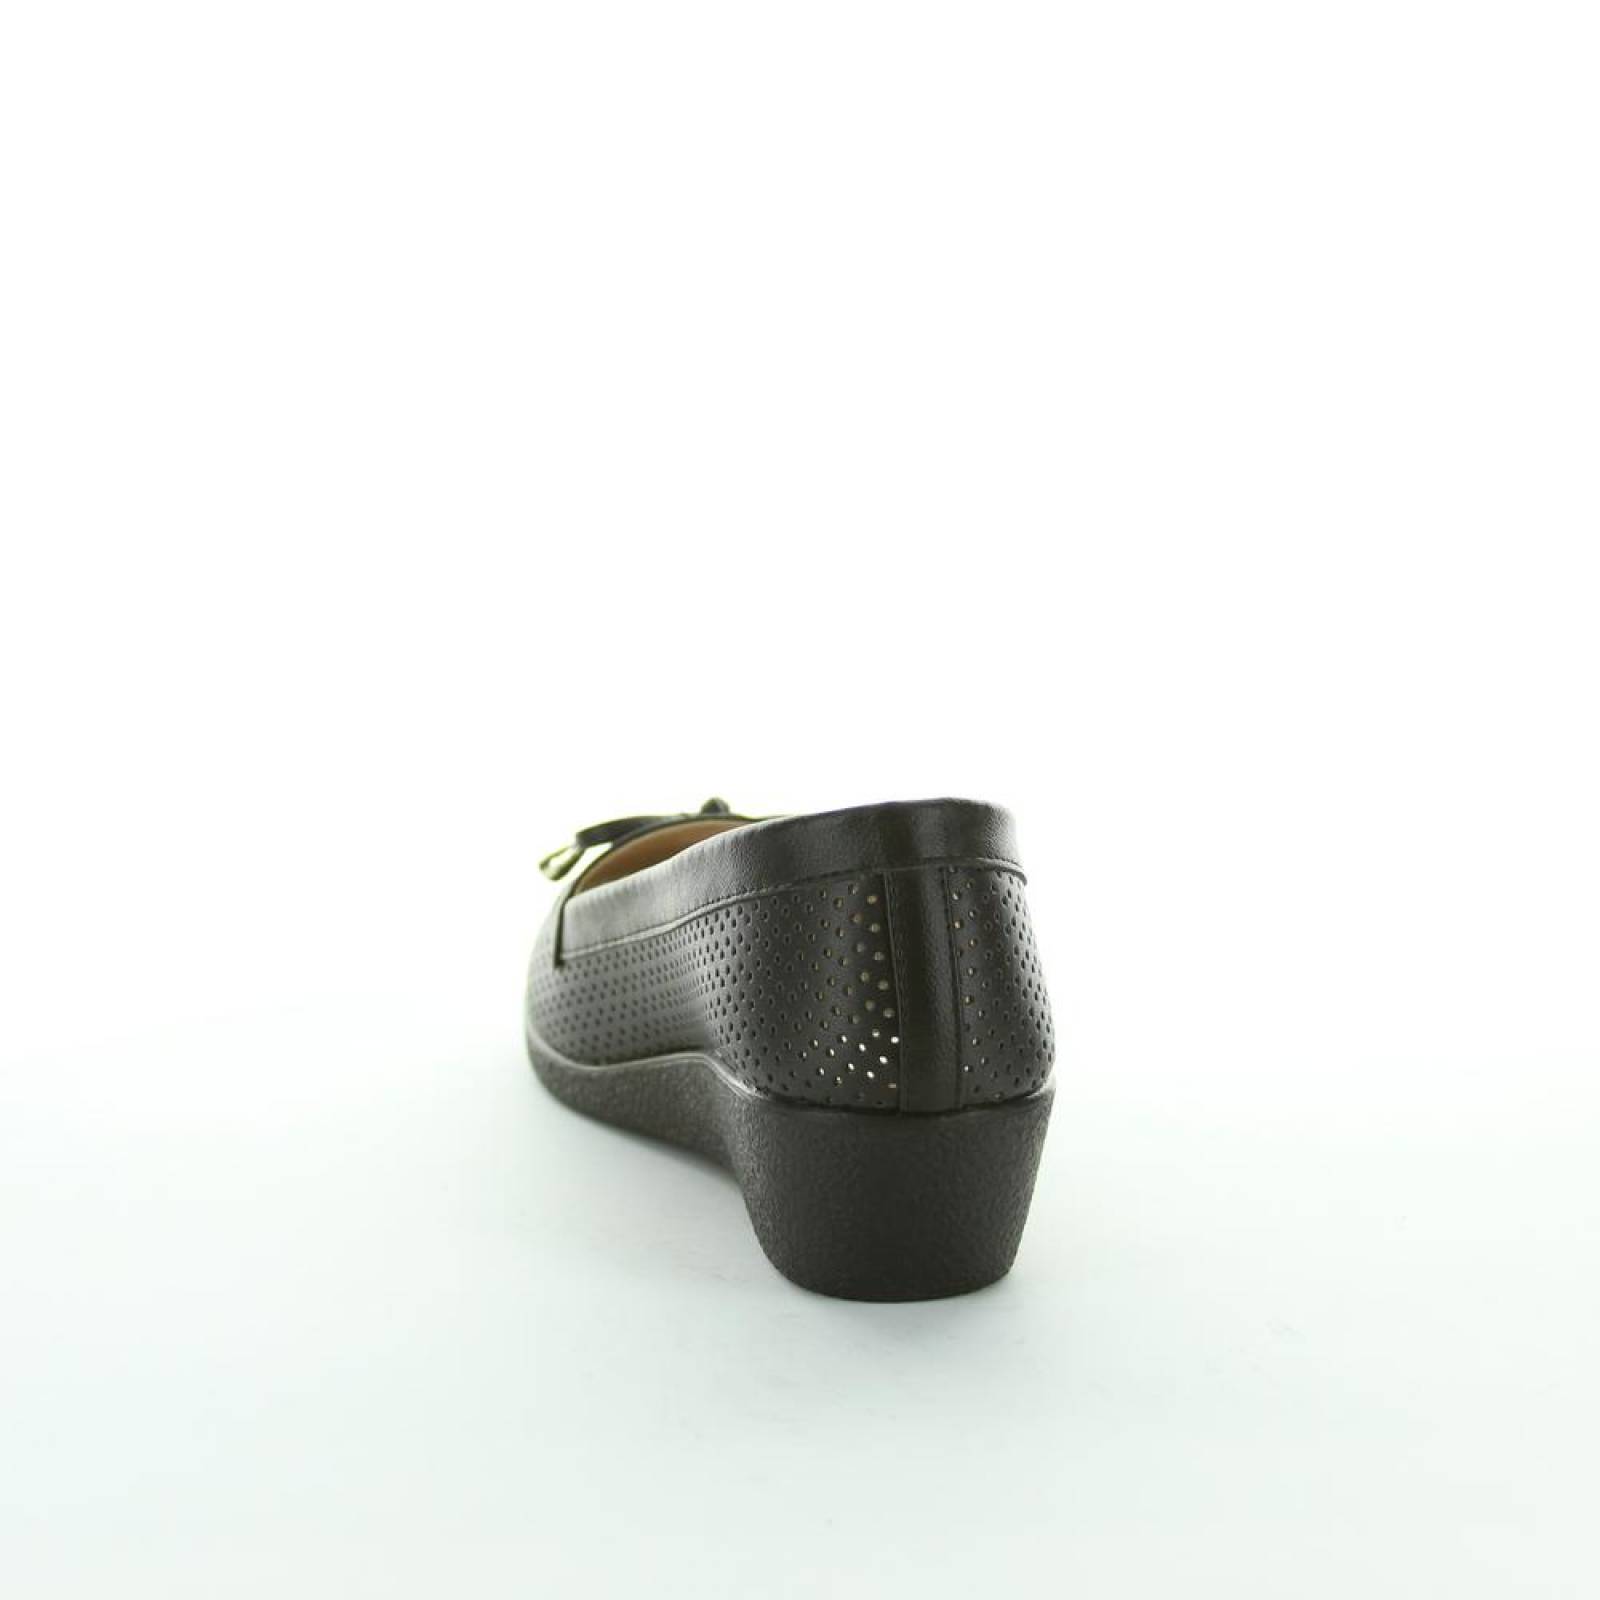 Zapato Confort Mujer Salvaje Tentación Negro 16103100 Tacto Piel 